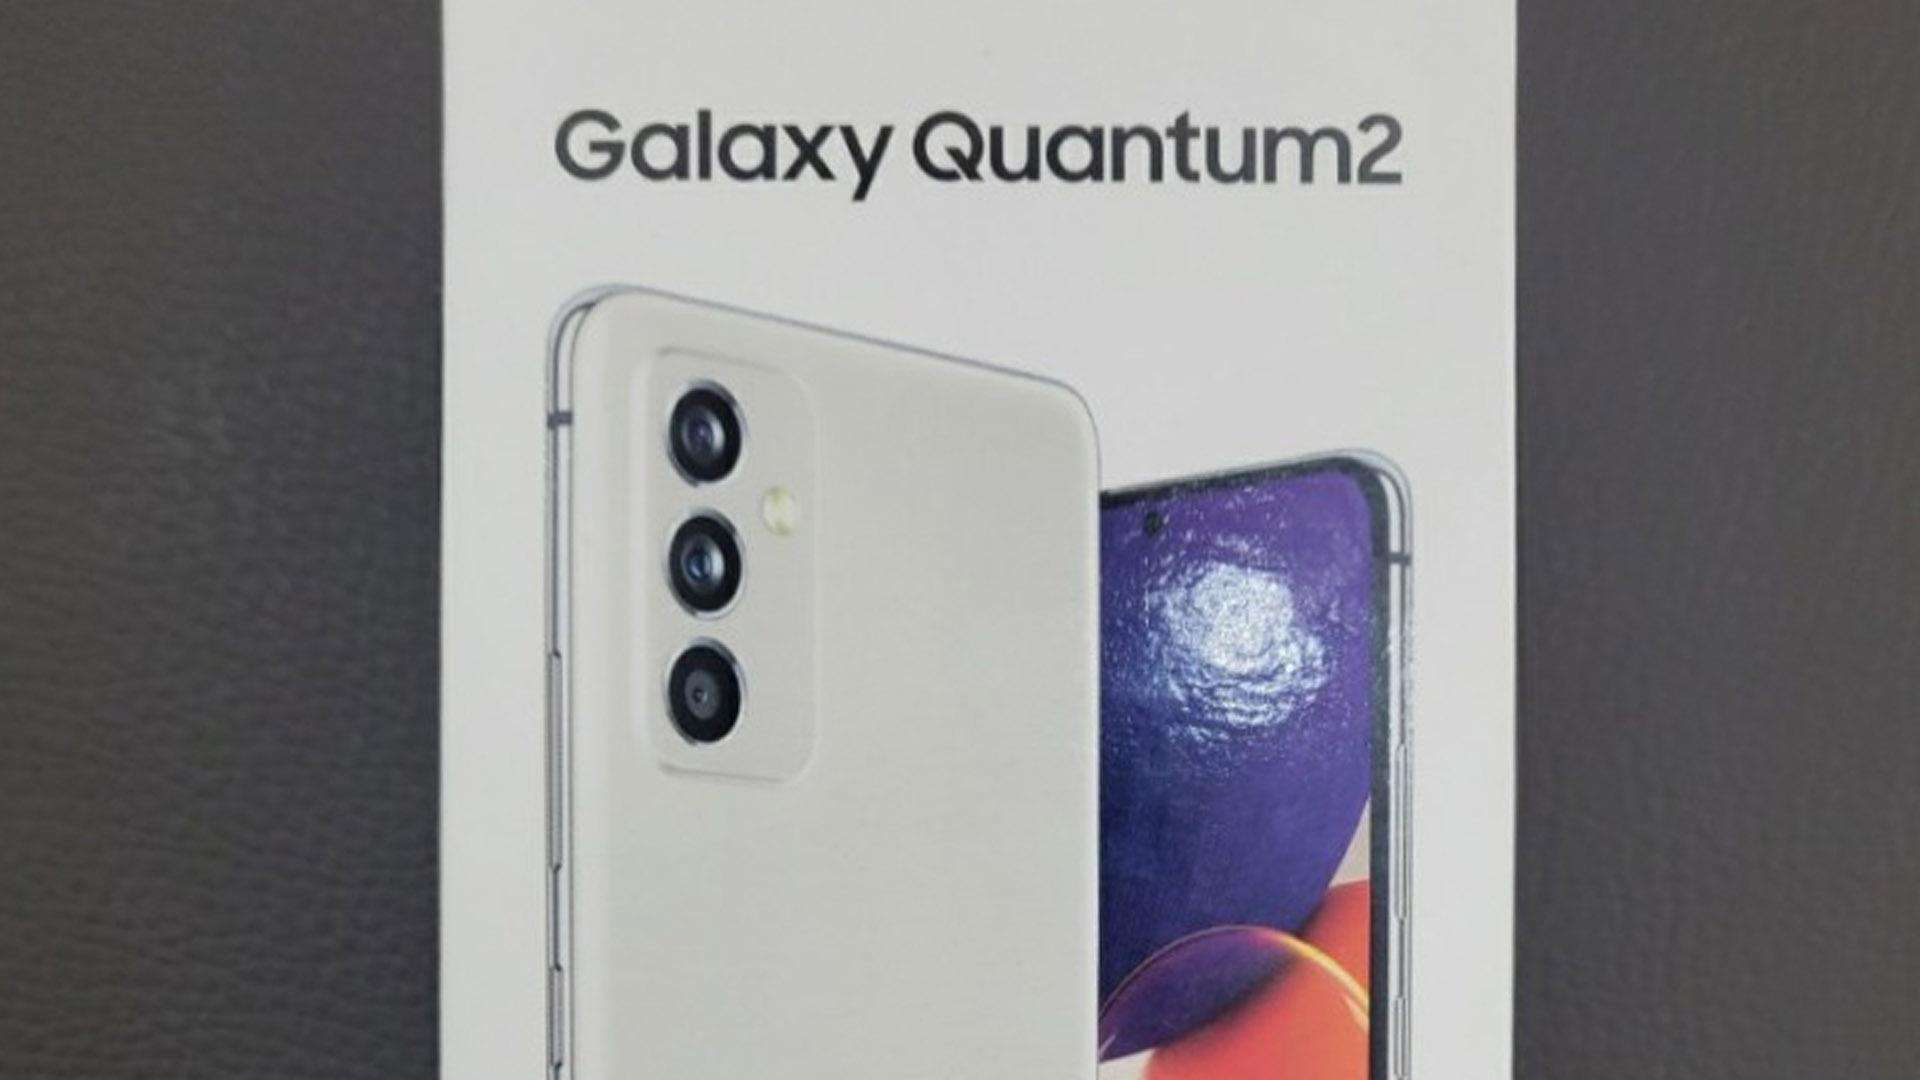 Samsung galaxy quantum 2 इस महीने शानदार फीचर्स, लीक लाइफ शॉट इमेज के साथ लॉन्च होगा